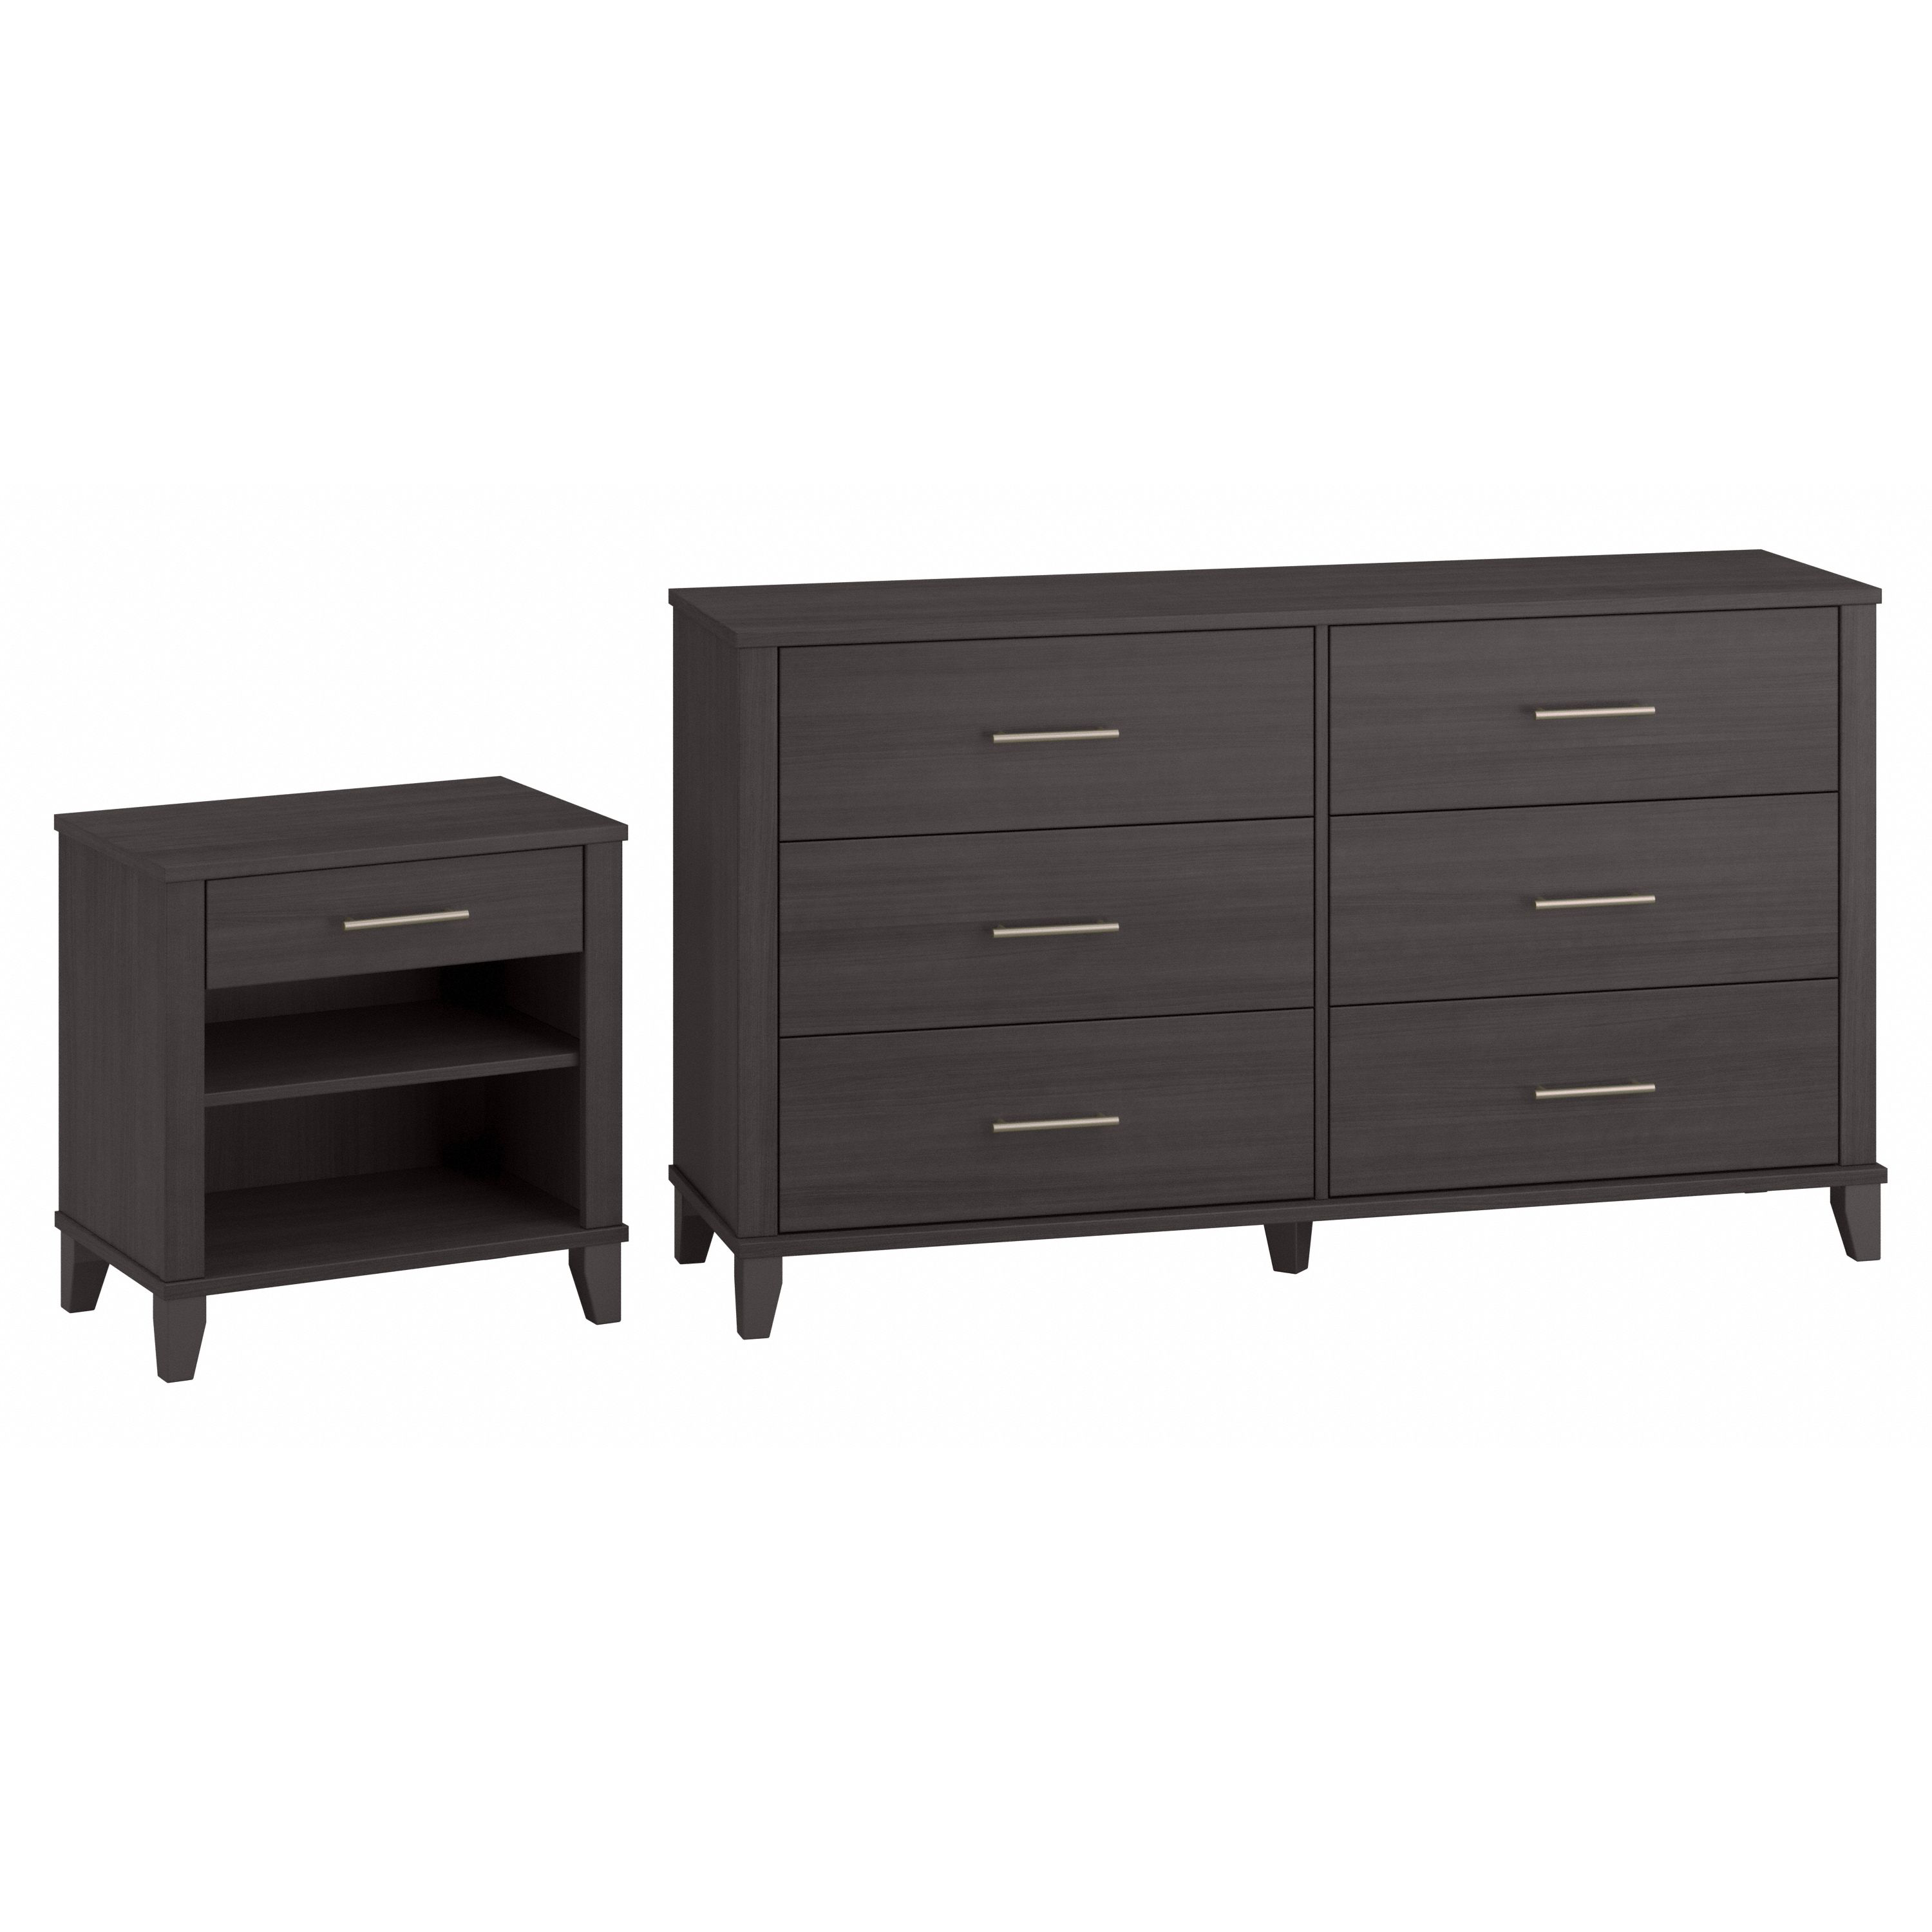 Shop Bush Furniture Somerset 6 Drawer Dresser and Nightstand Set 02 SET035SG #color_storm gray